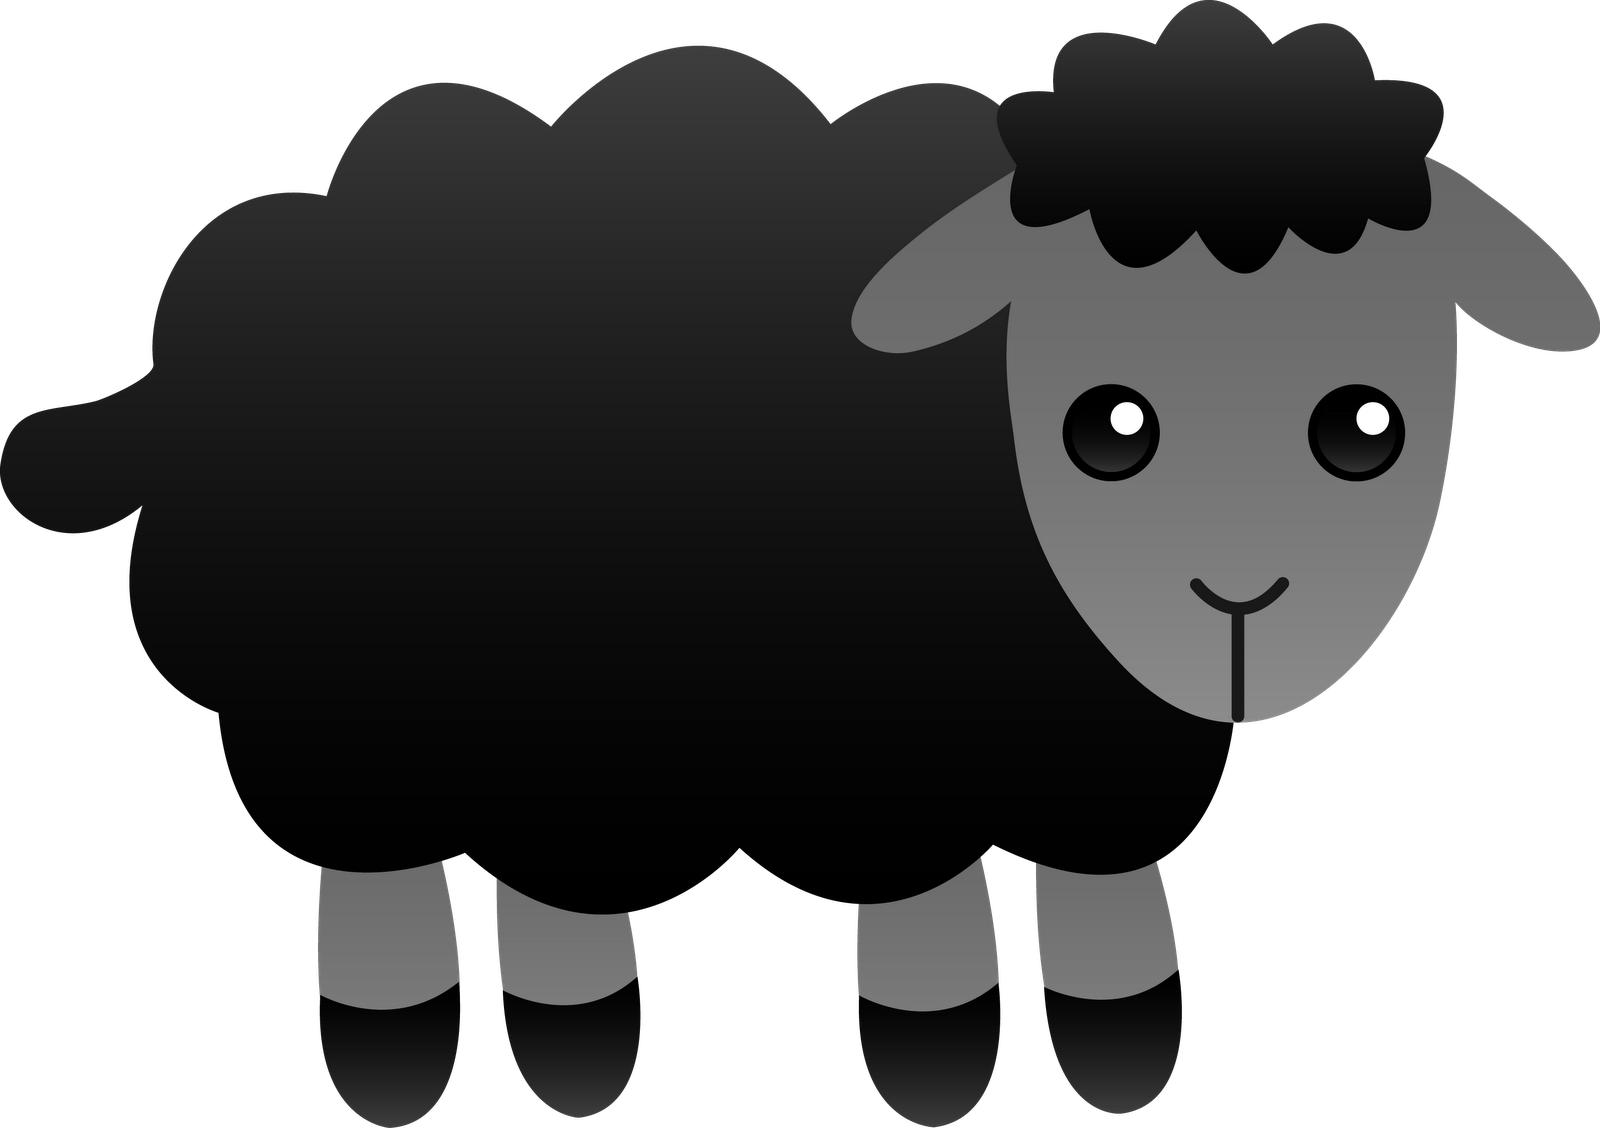 Baa baa black sheep clip art